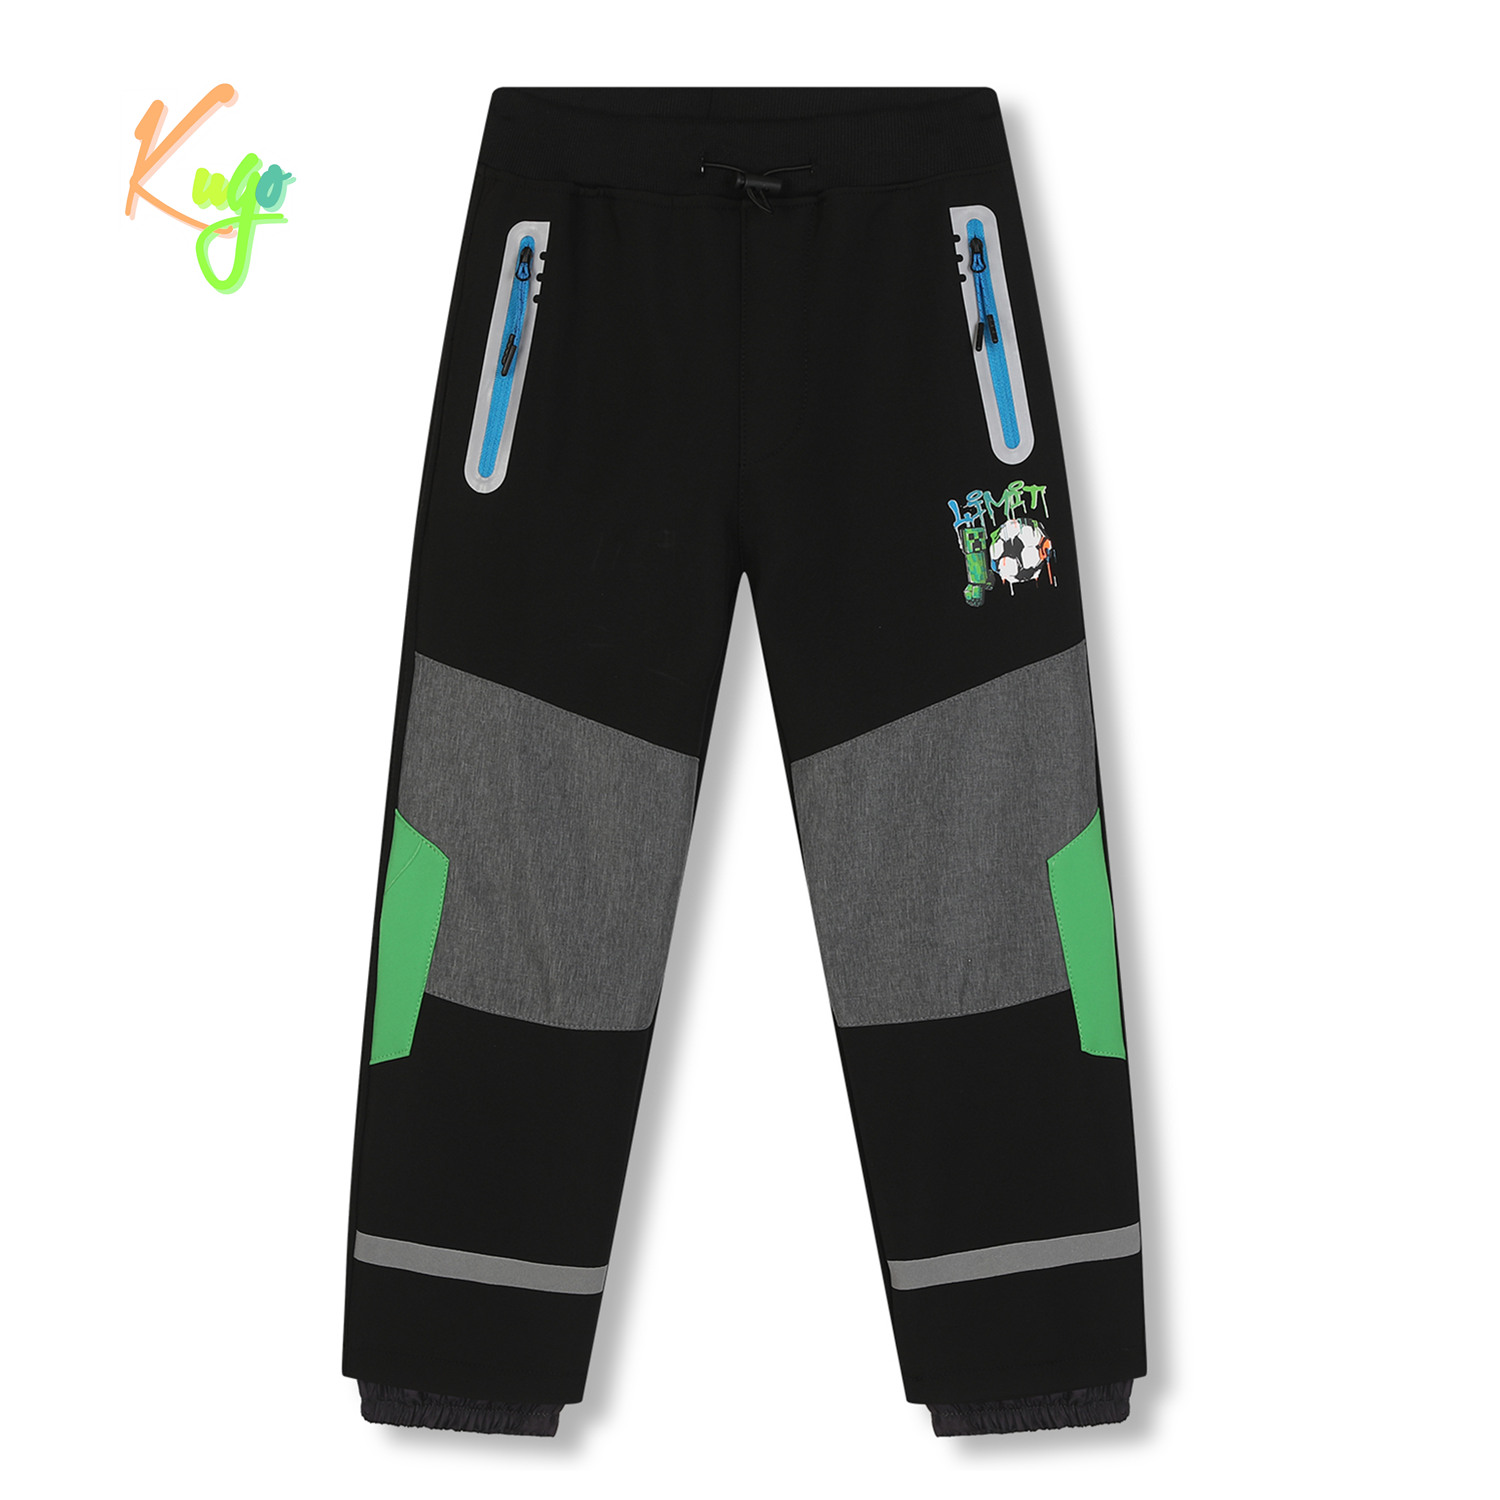 Chlapecké softshellové kalhoty, zateplené - KUGO HK5609, černá / tyrkysové zipy Barva: Černá, Velikost: 122